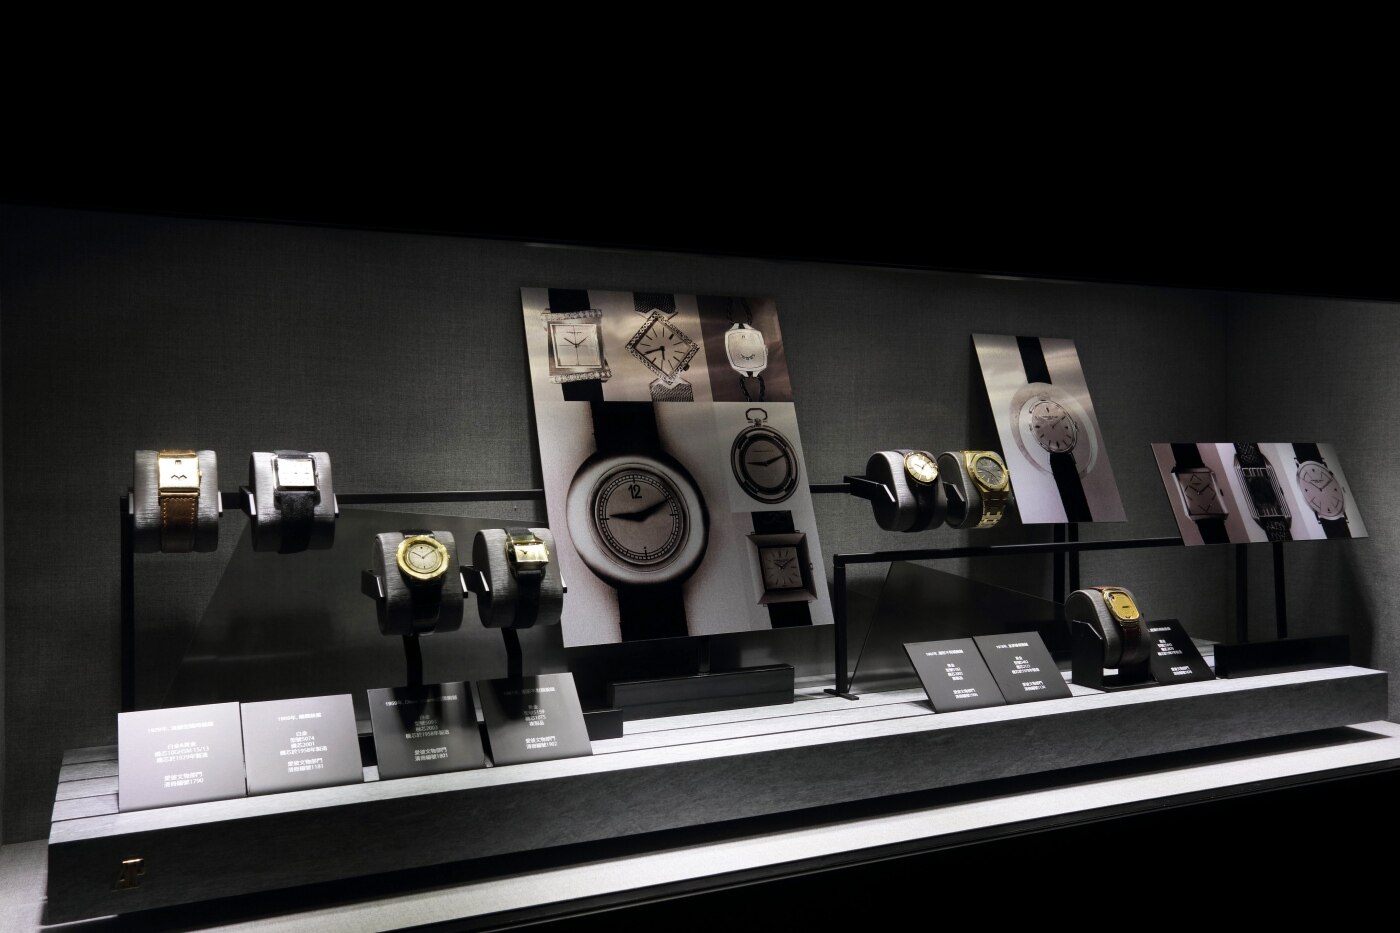 現場亦展示了特地從愛彼博物館借出的7枚典藏珍稀歷史錶款